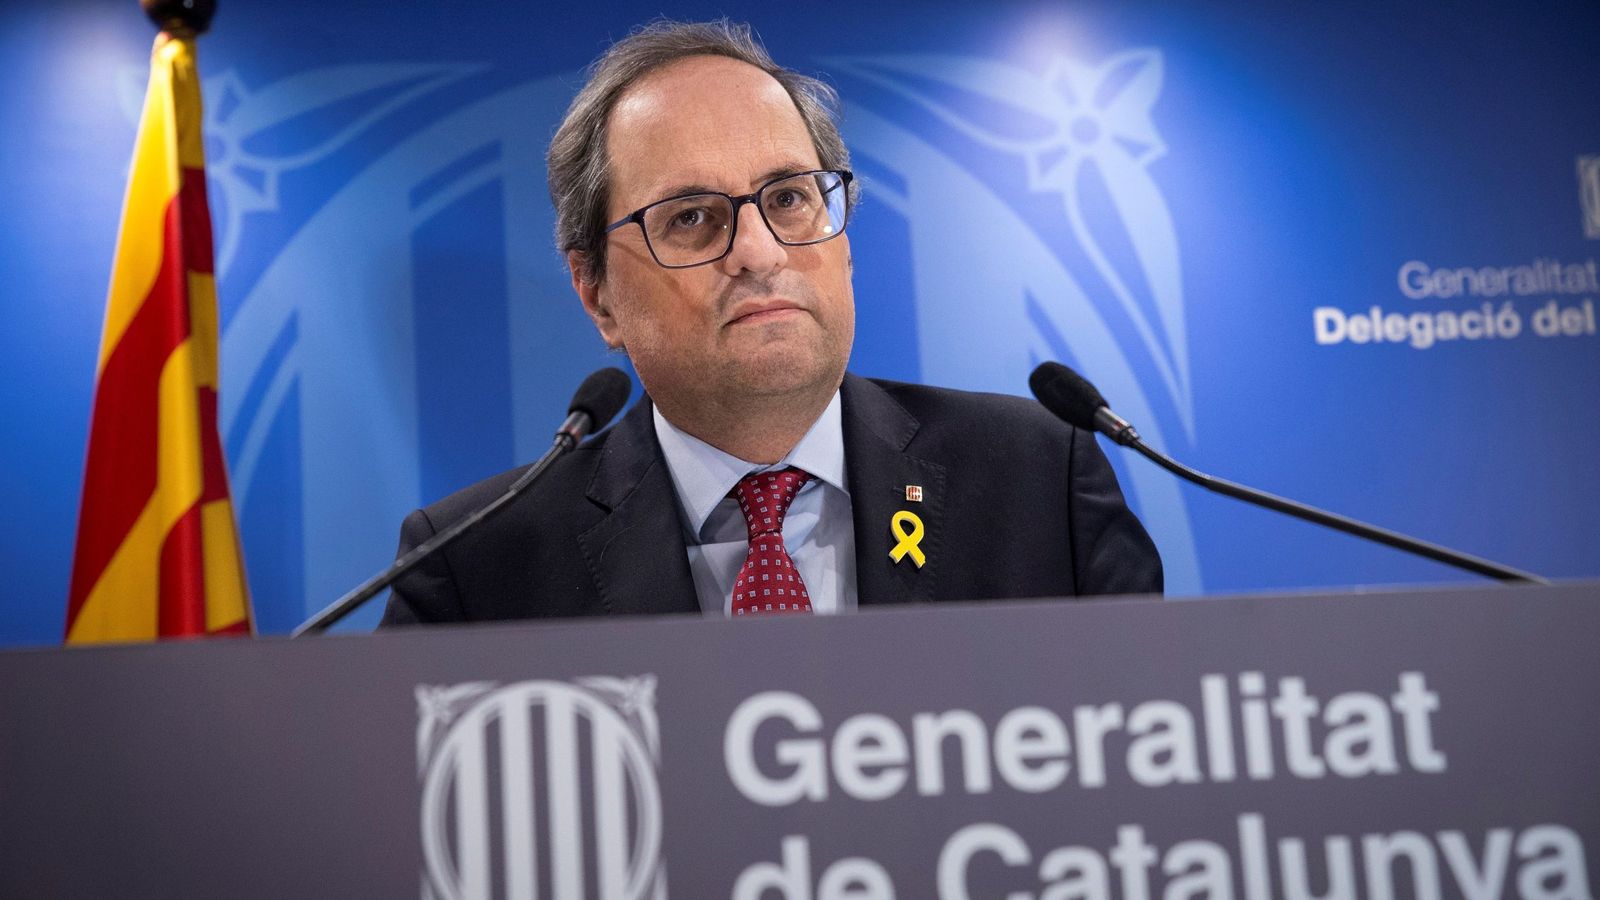 Foto: El presidente de la Generalitat, Quim Torra, durante la comparecencia ante los medios tras finalizar la primera jornada del juicio del 1-O. (EFE)